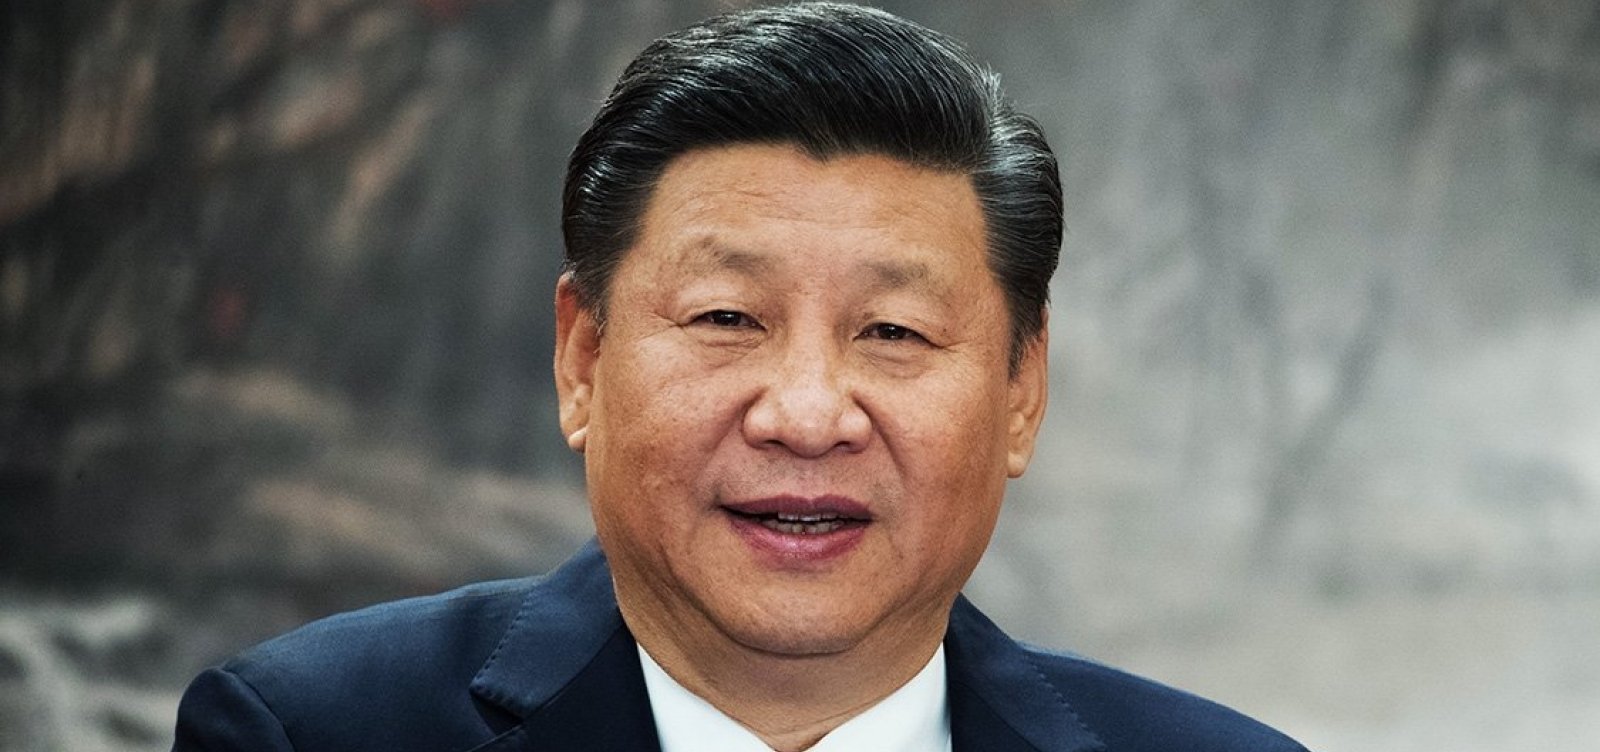 Xi Jinping diz que vírus chinês deve ser ‘completamente contido’ e pede ‘prioridade’ para caso